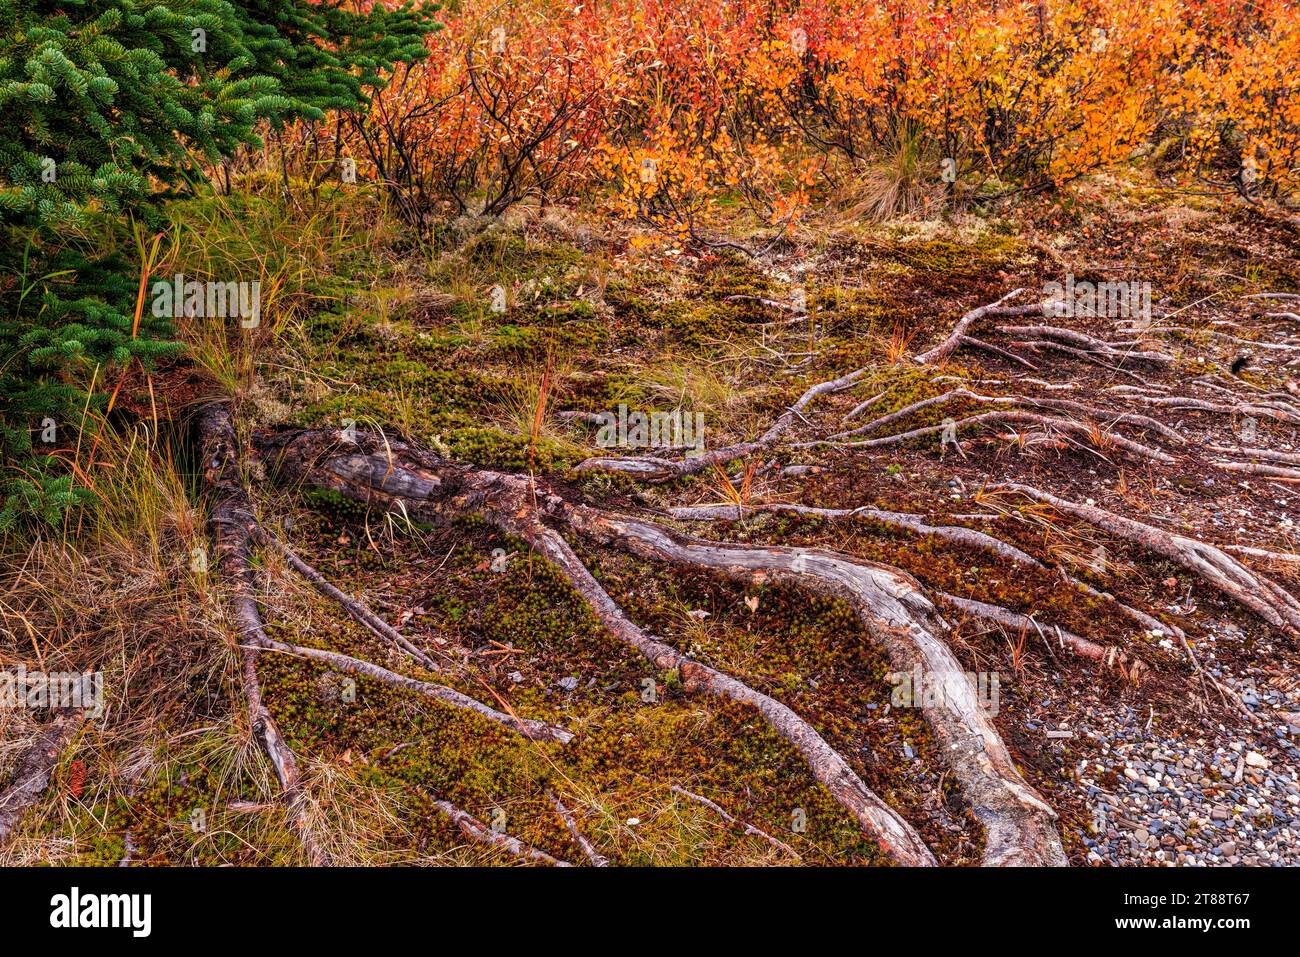 Cailloux, mousse, saule, racines et bouleau nain composent une tapisserie de textures de toundra automnale dans le parc national de Denali, en Alaska. Banque D'Images